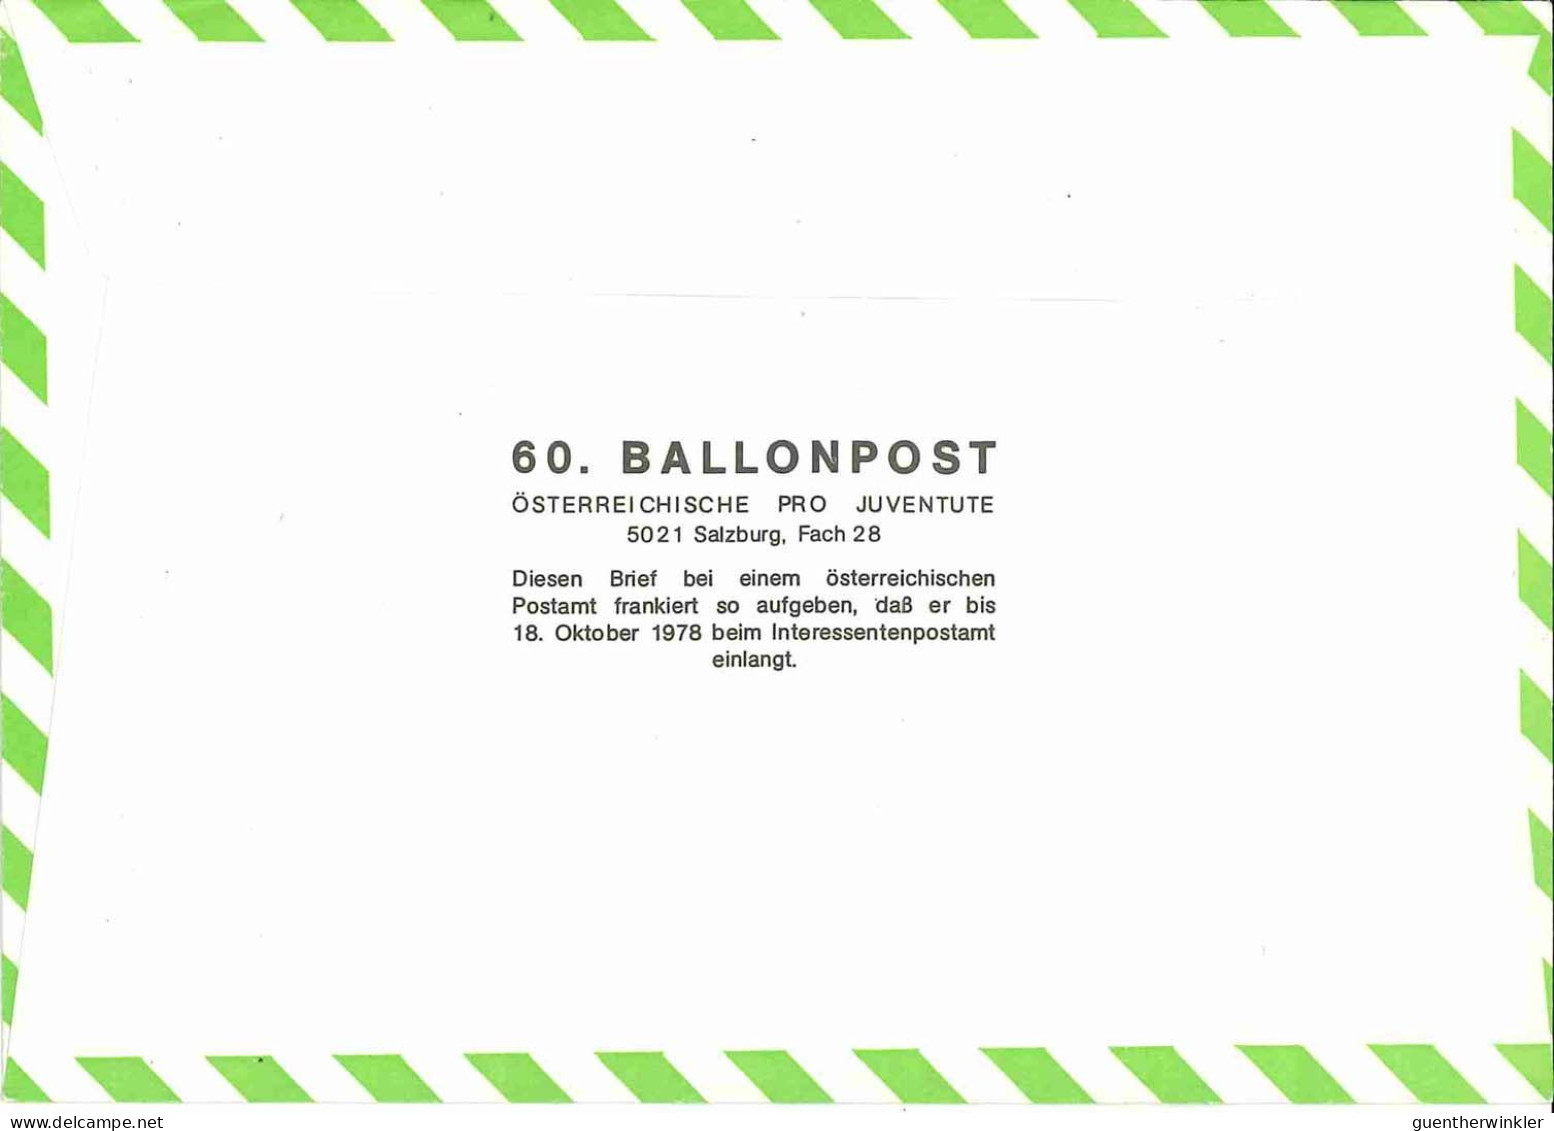 Regulärer Ballonpostflug Nr. 60a Der Pro Juventute [RBP60d] - Par Ballon